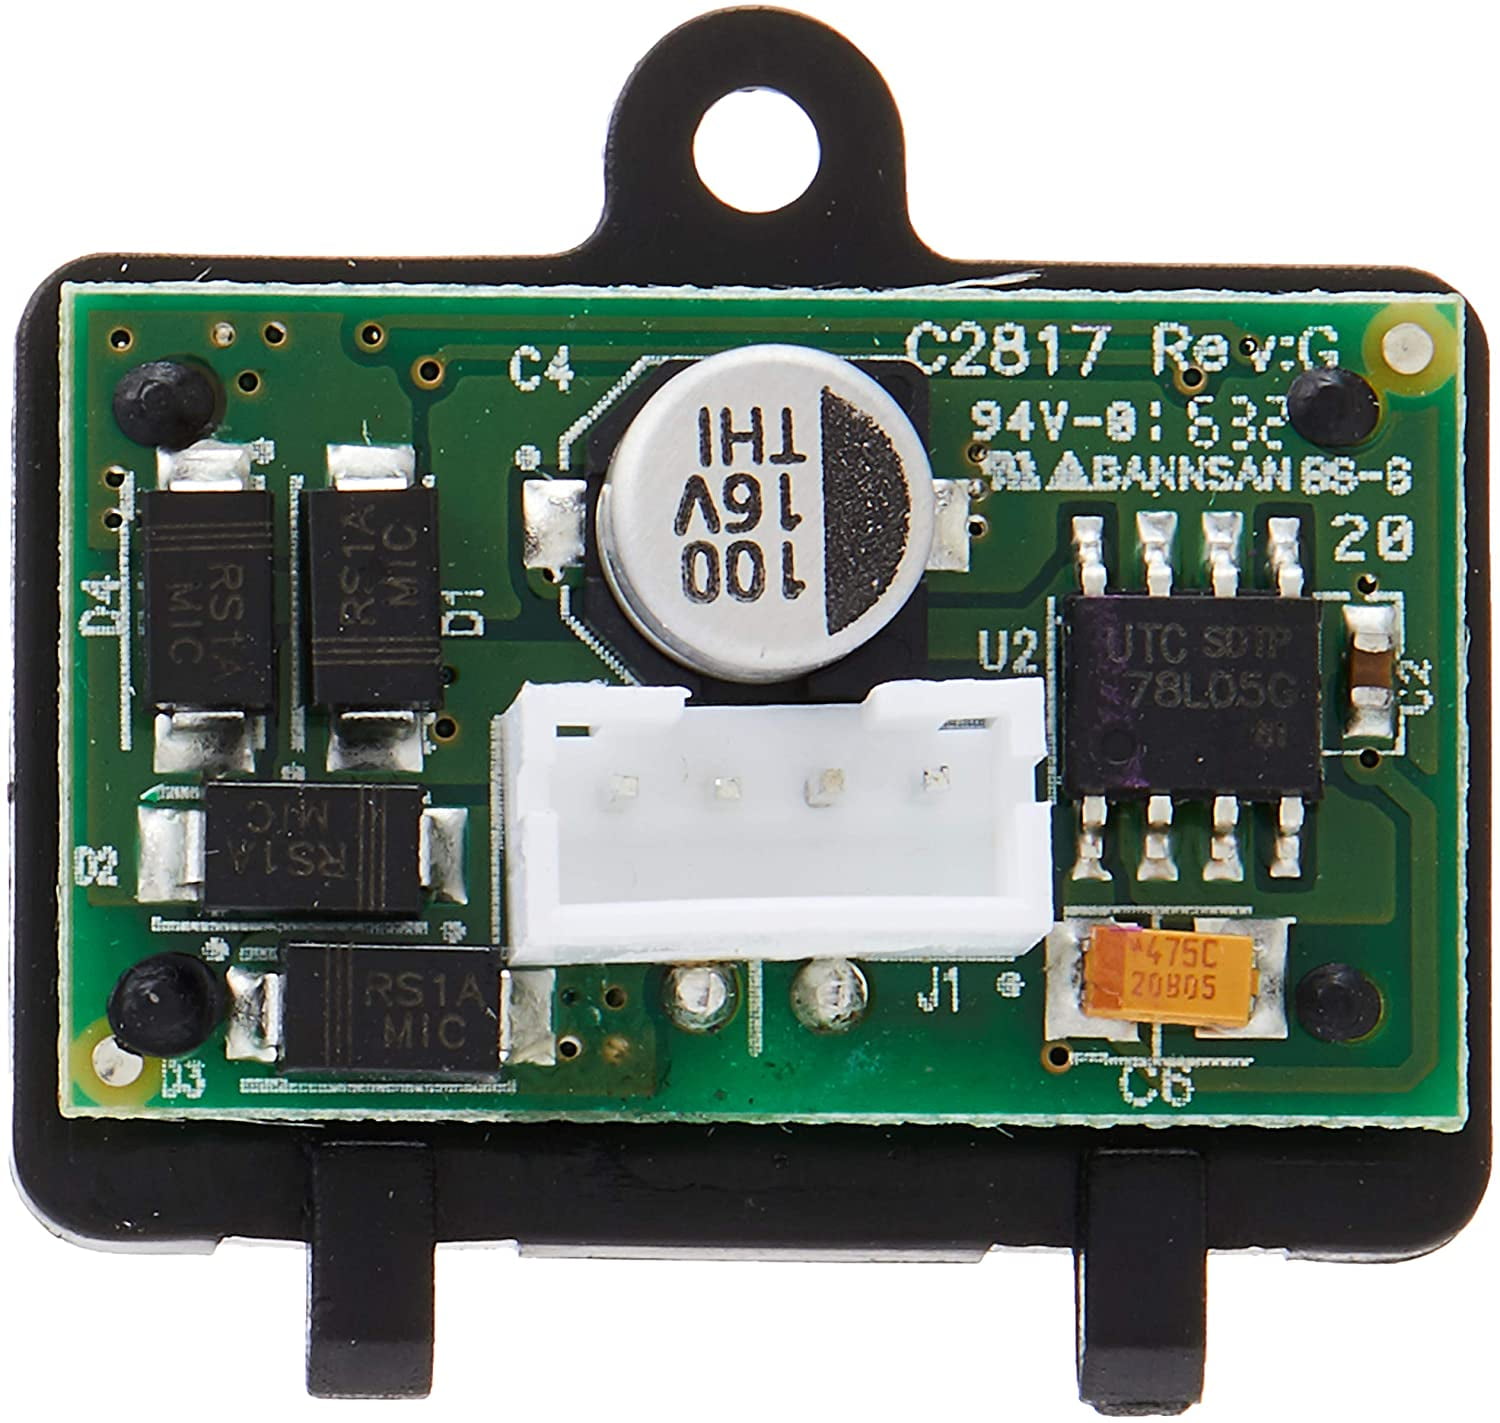 Scalextric C8515 Easyfit Digital Plug-Convertit RMR Prêt voitures au numérique! 